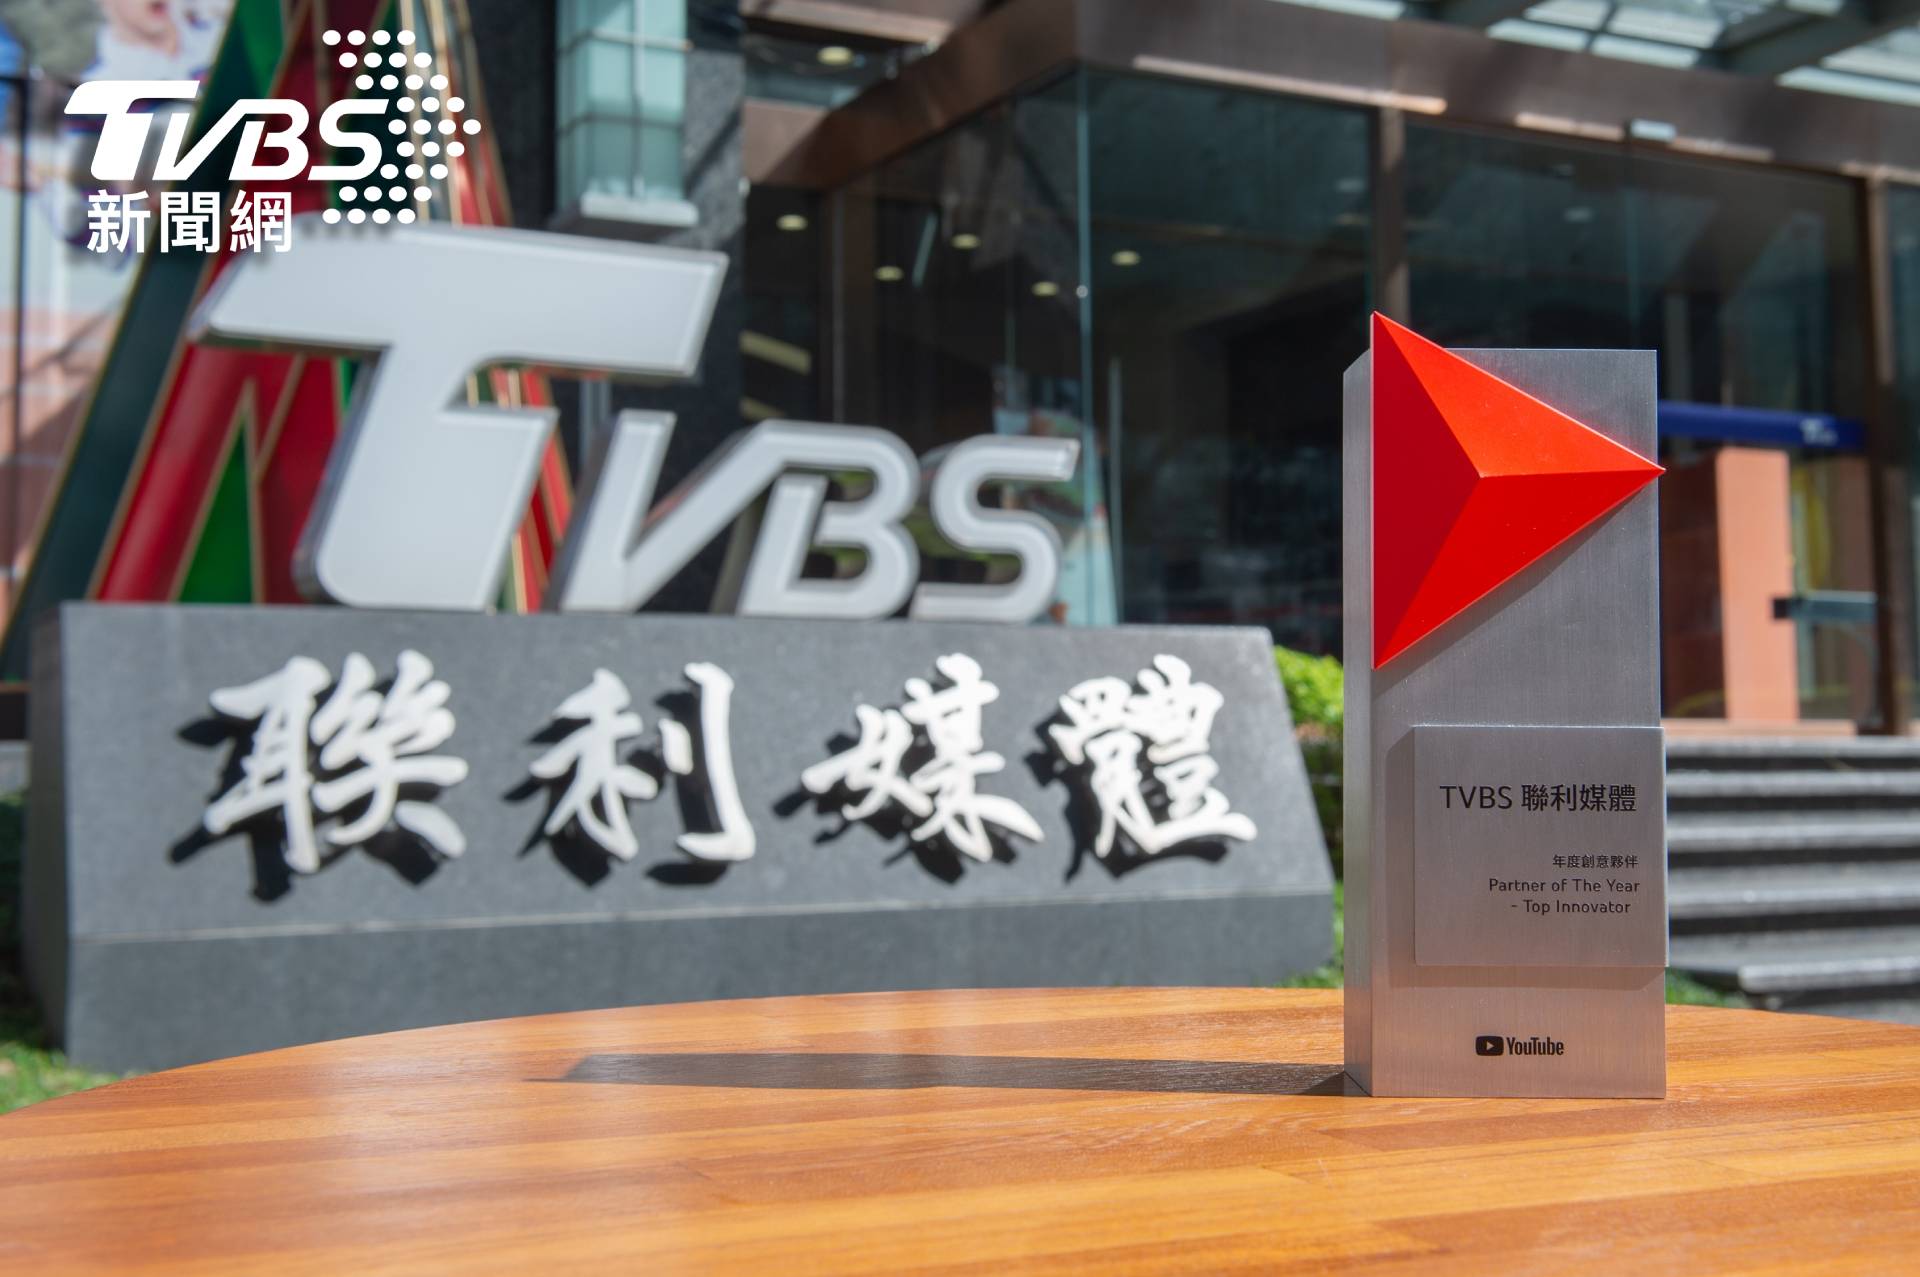 TVBS於2021台灣&香港YouTube年度夥伴高峰會中，獲頒「年度創意夥伴」獎項 (圖/TVBS)